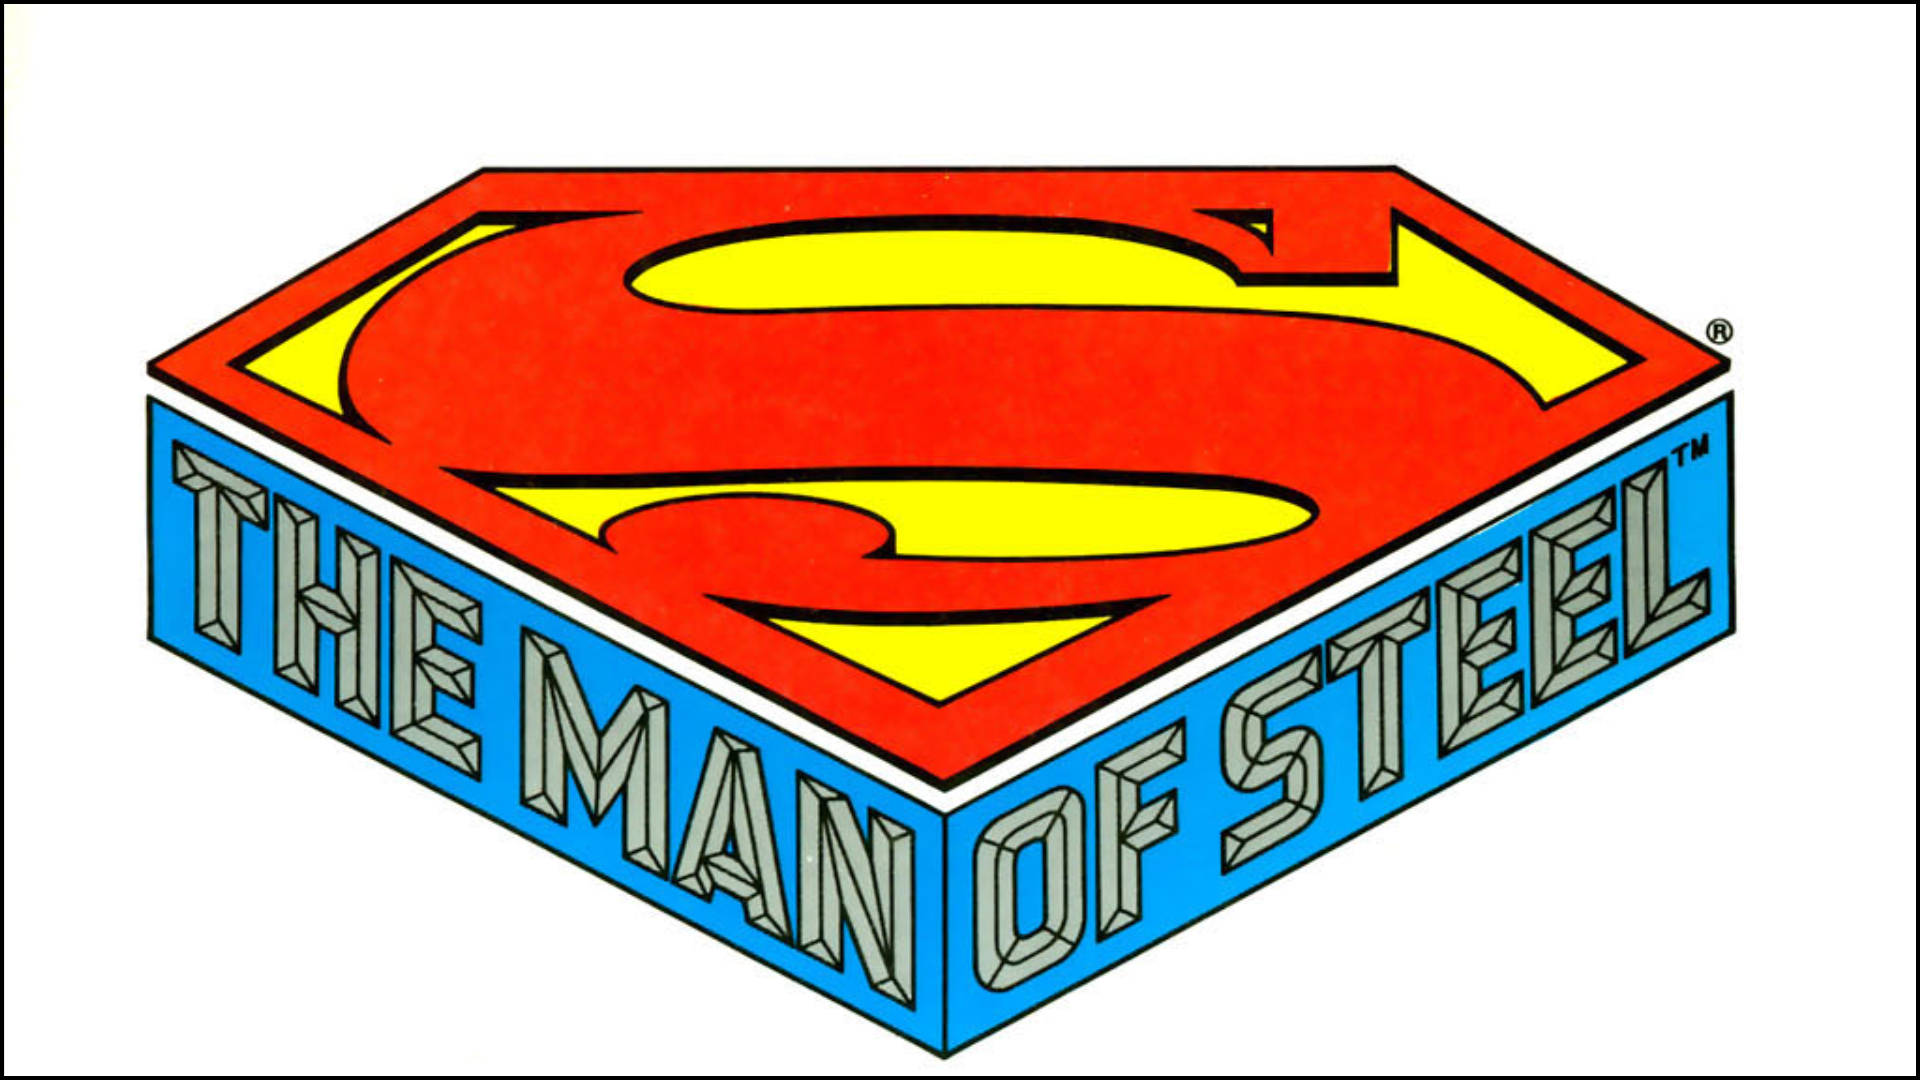 Mannenav Stål Supermans Logotyp. Wallpaper